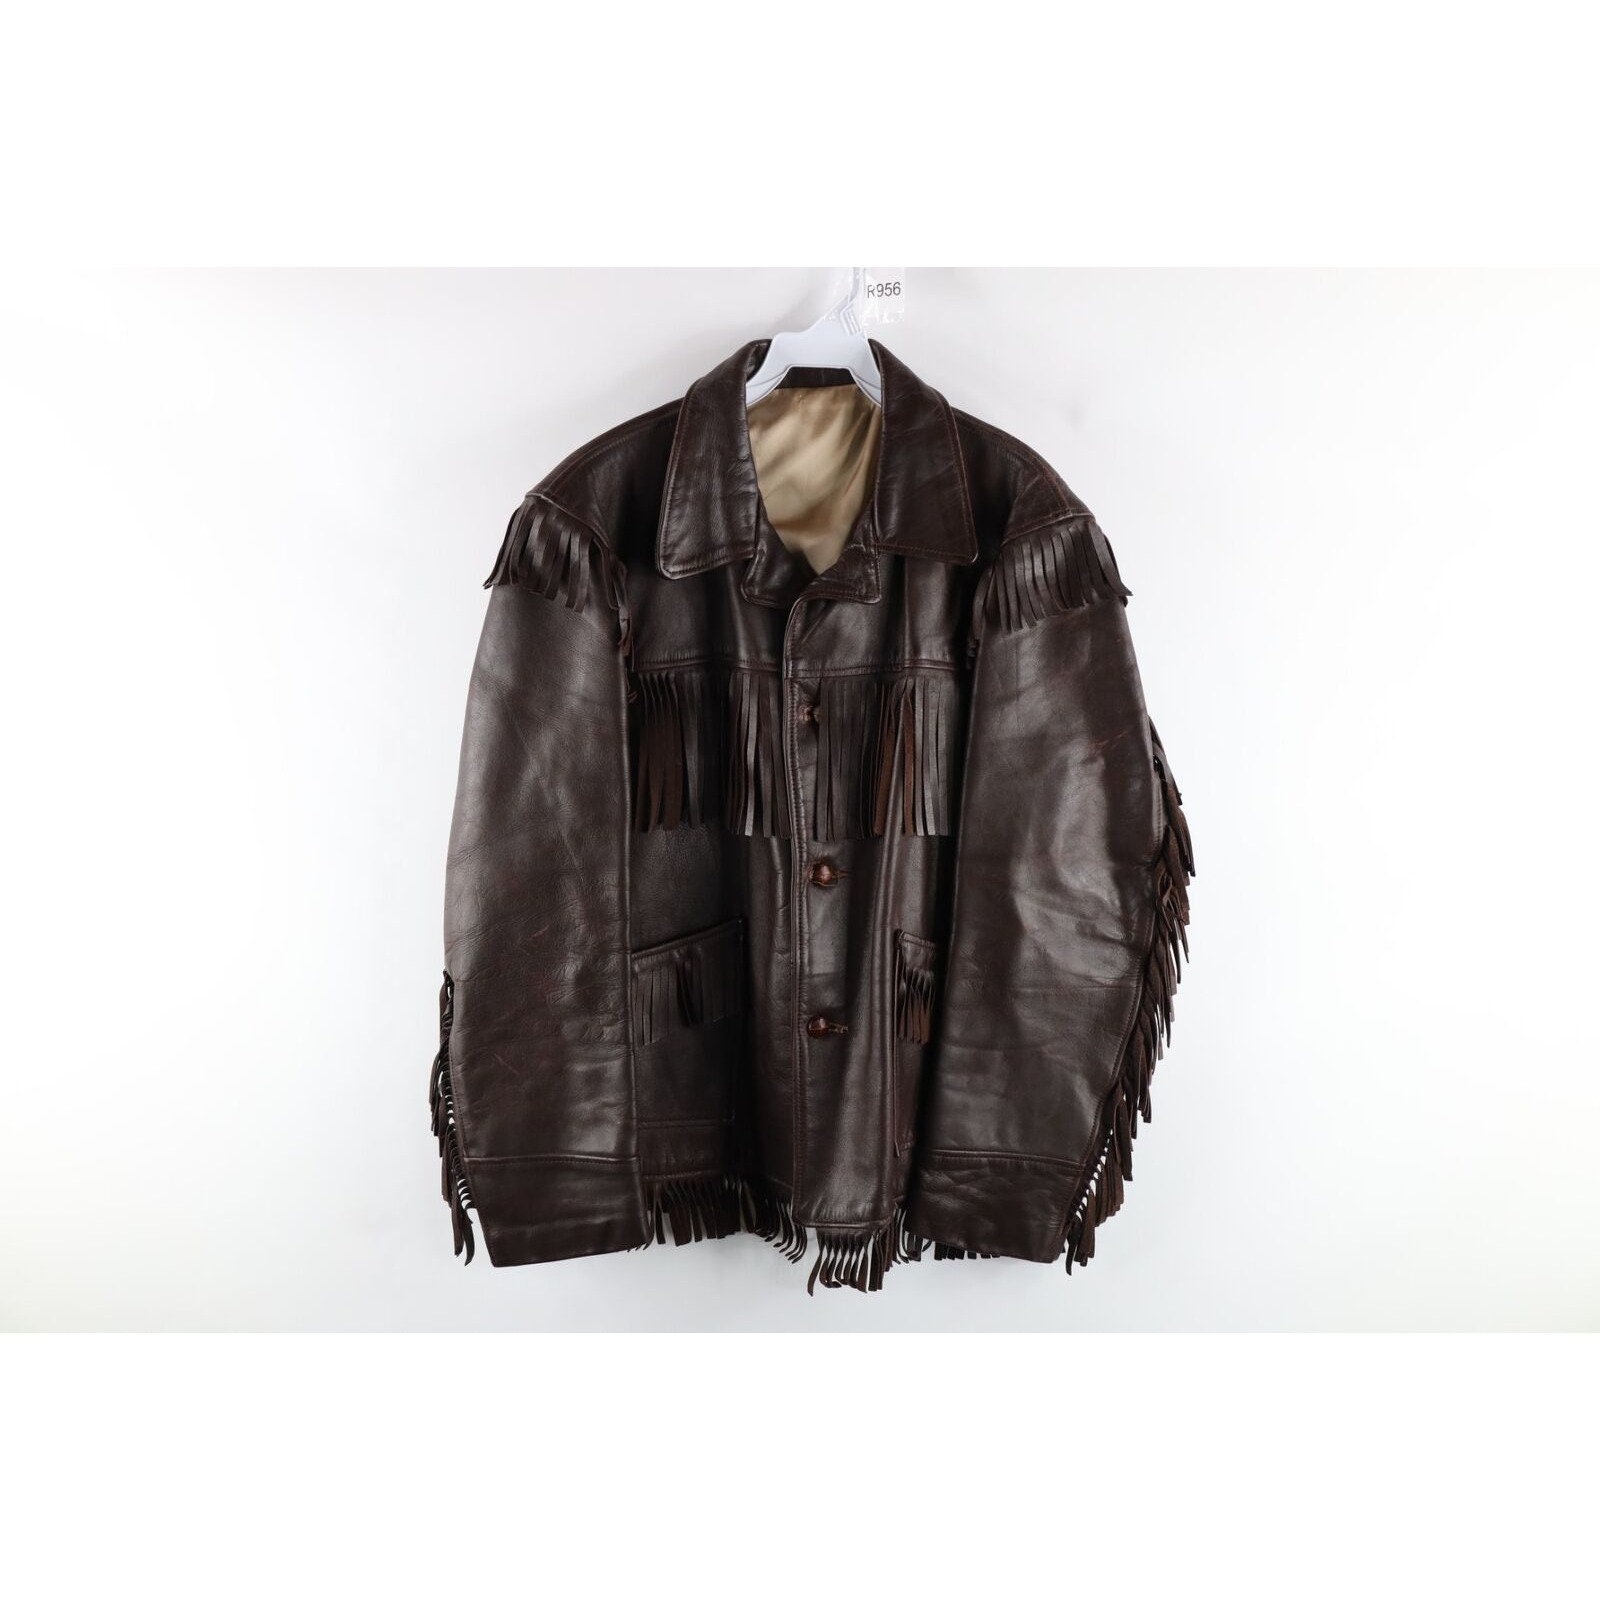 90s Leather Jacket - Etsy